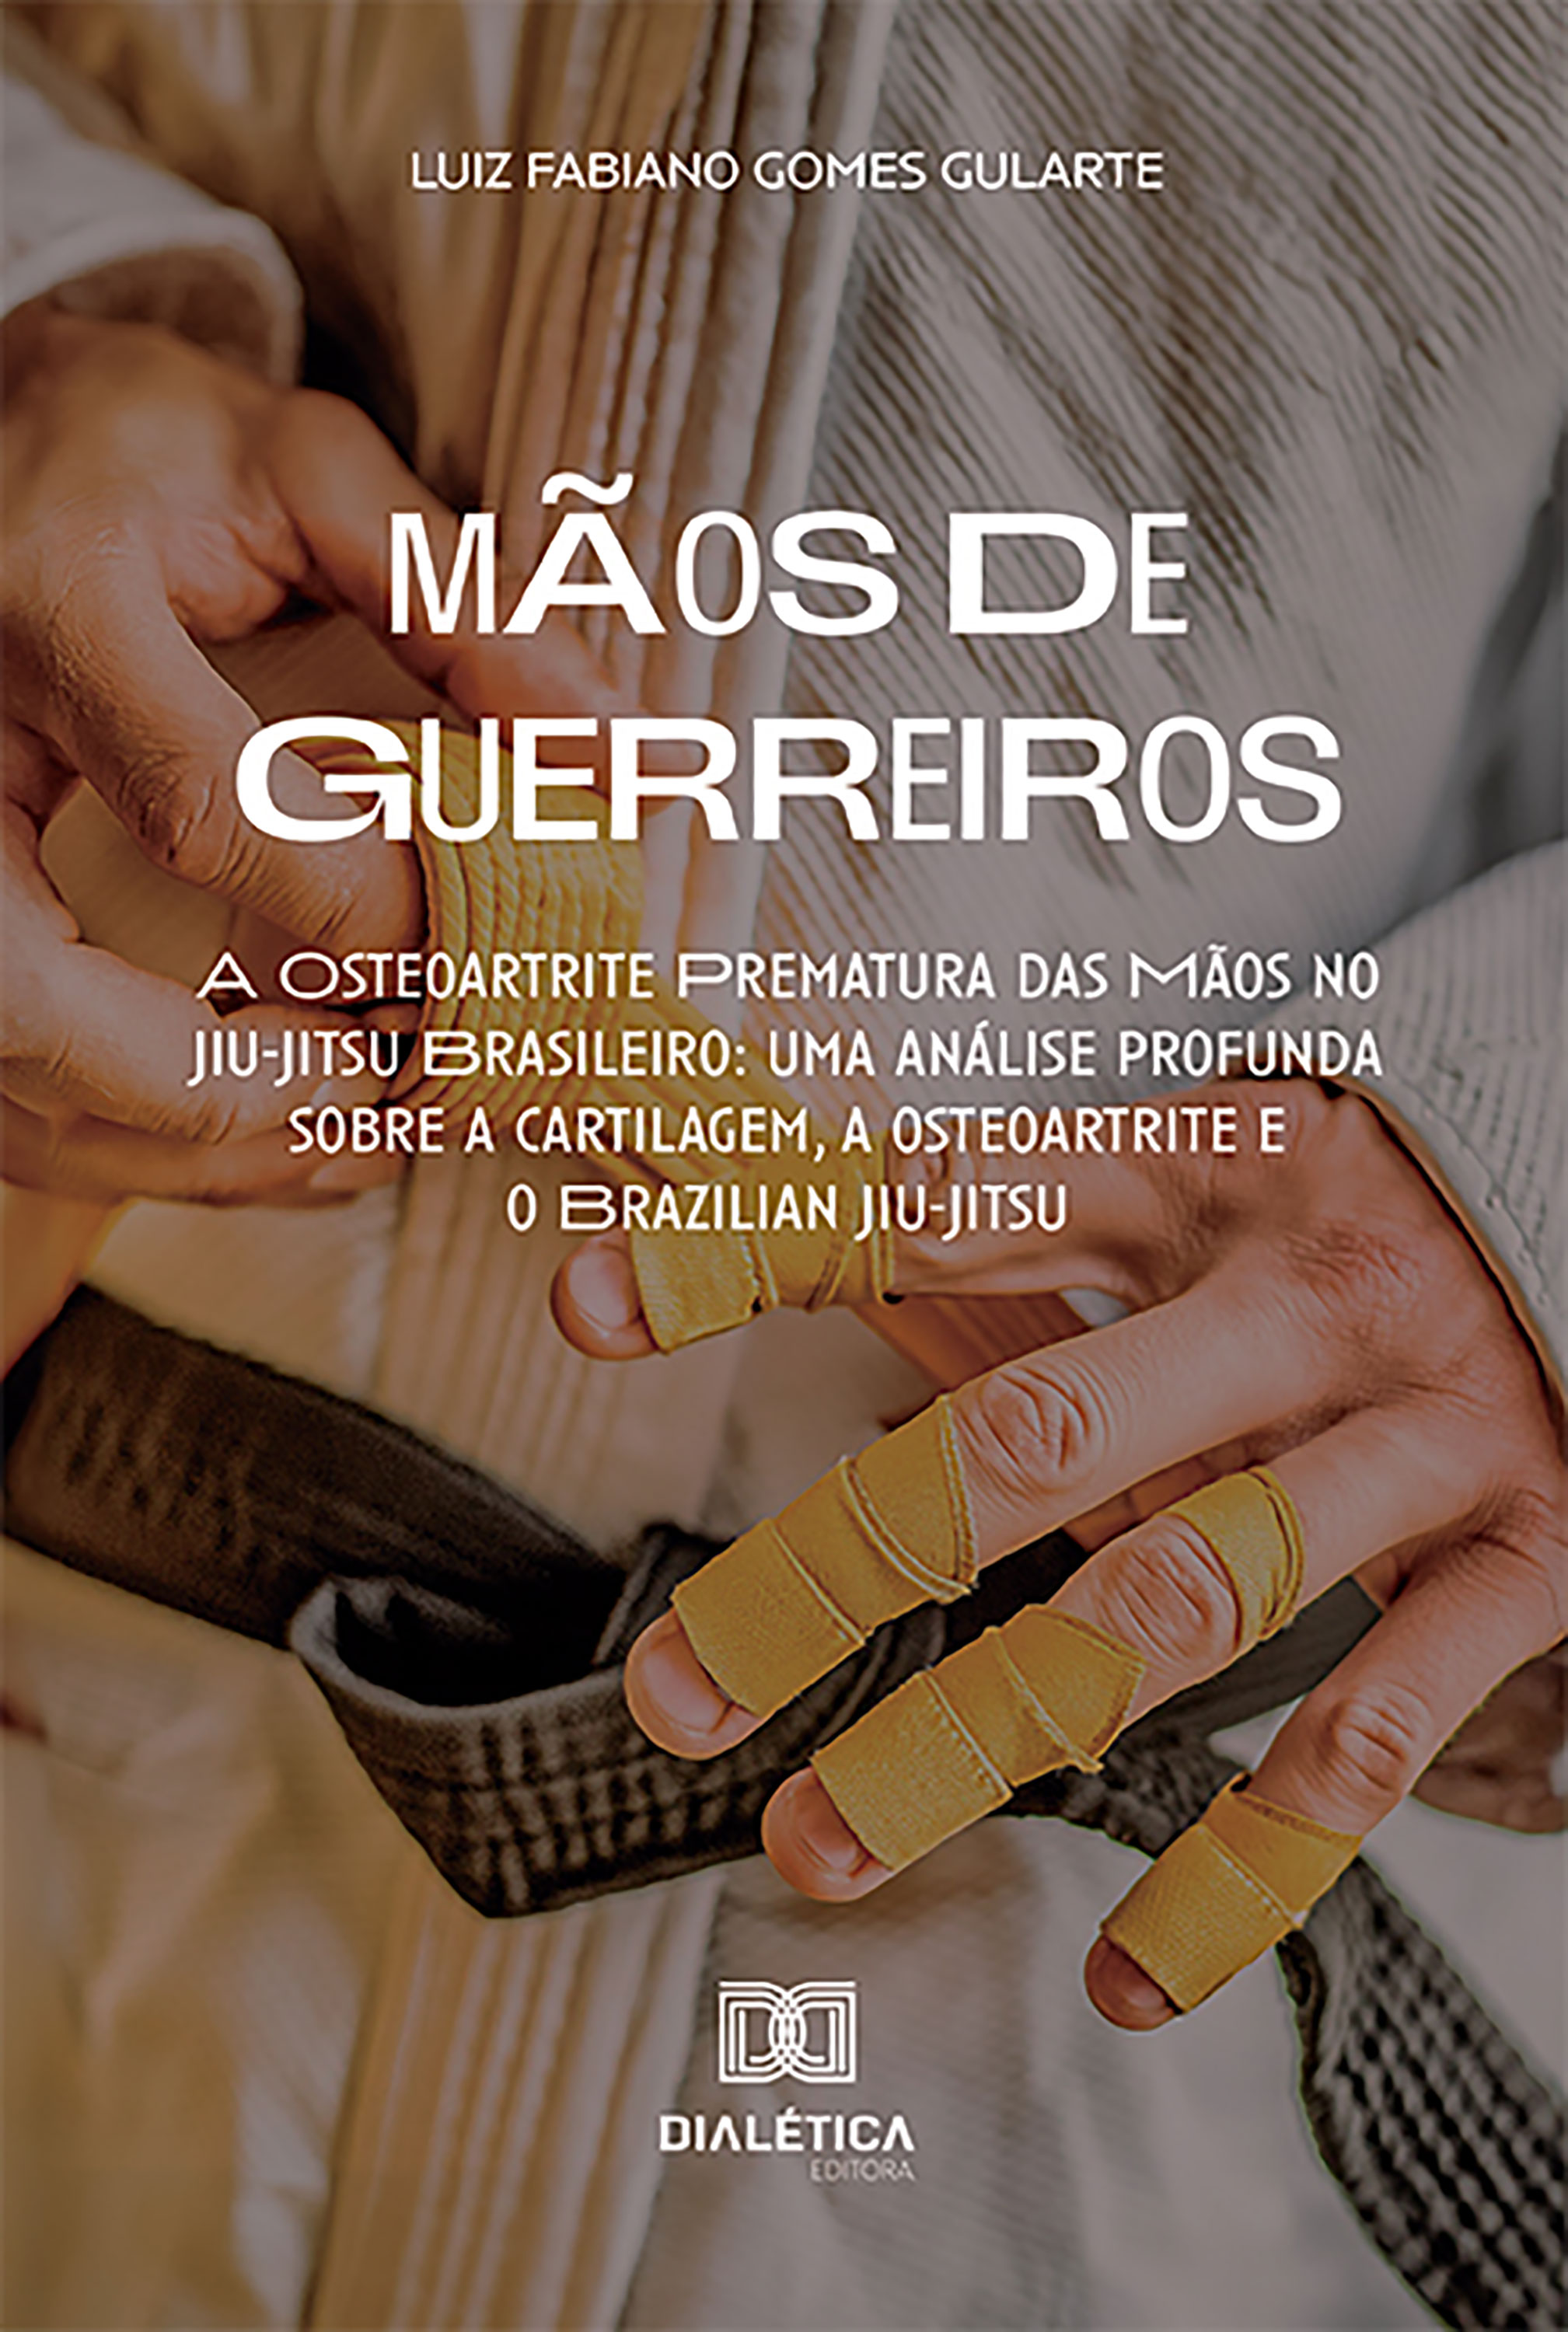 Mãos de Guerreiros – A Osteoartrite Prematura das Mãos no Jiu-Jitsu Brasileiro